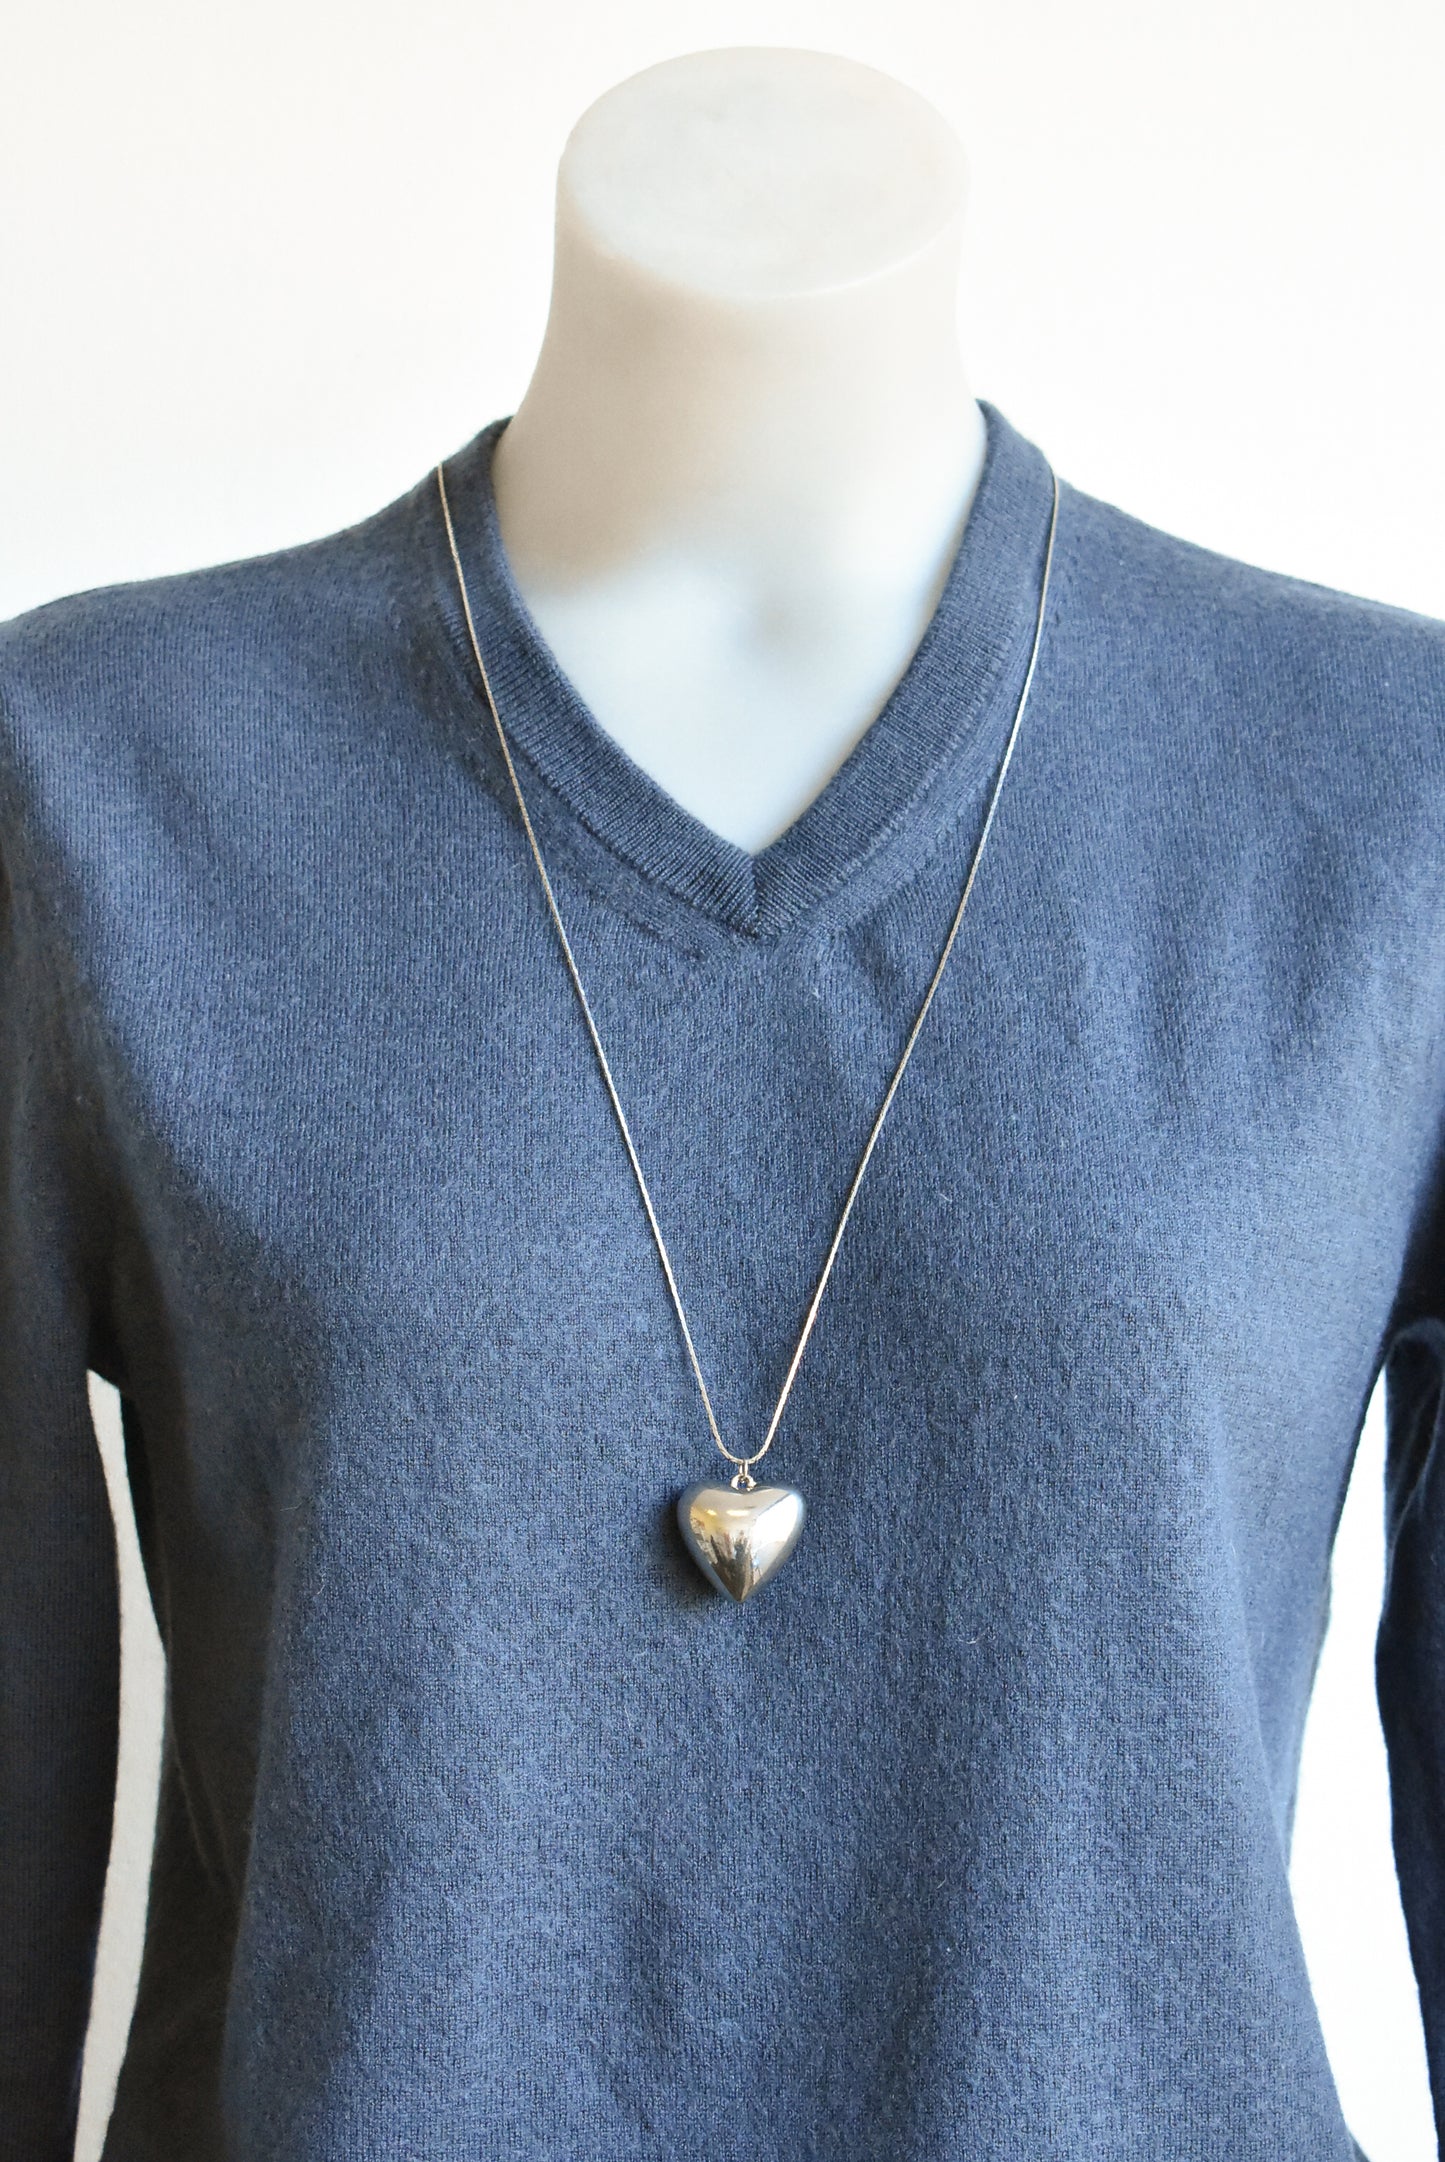 Whole heart pendant necklace